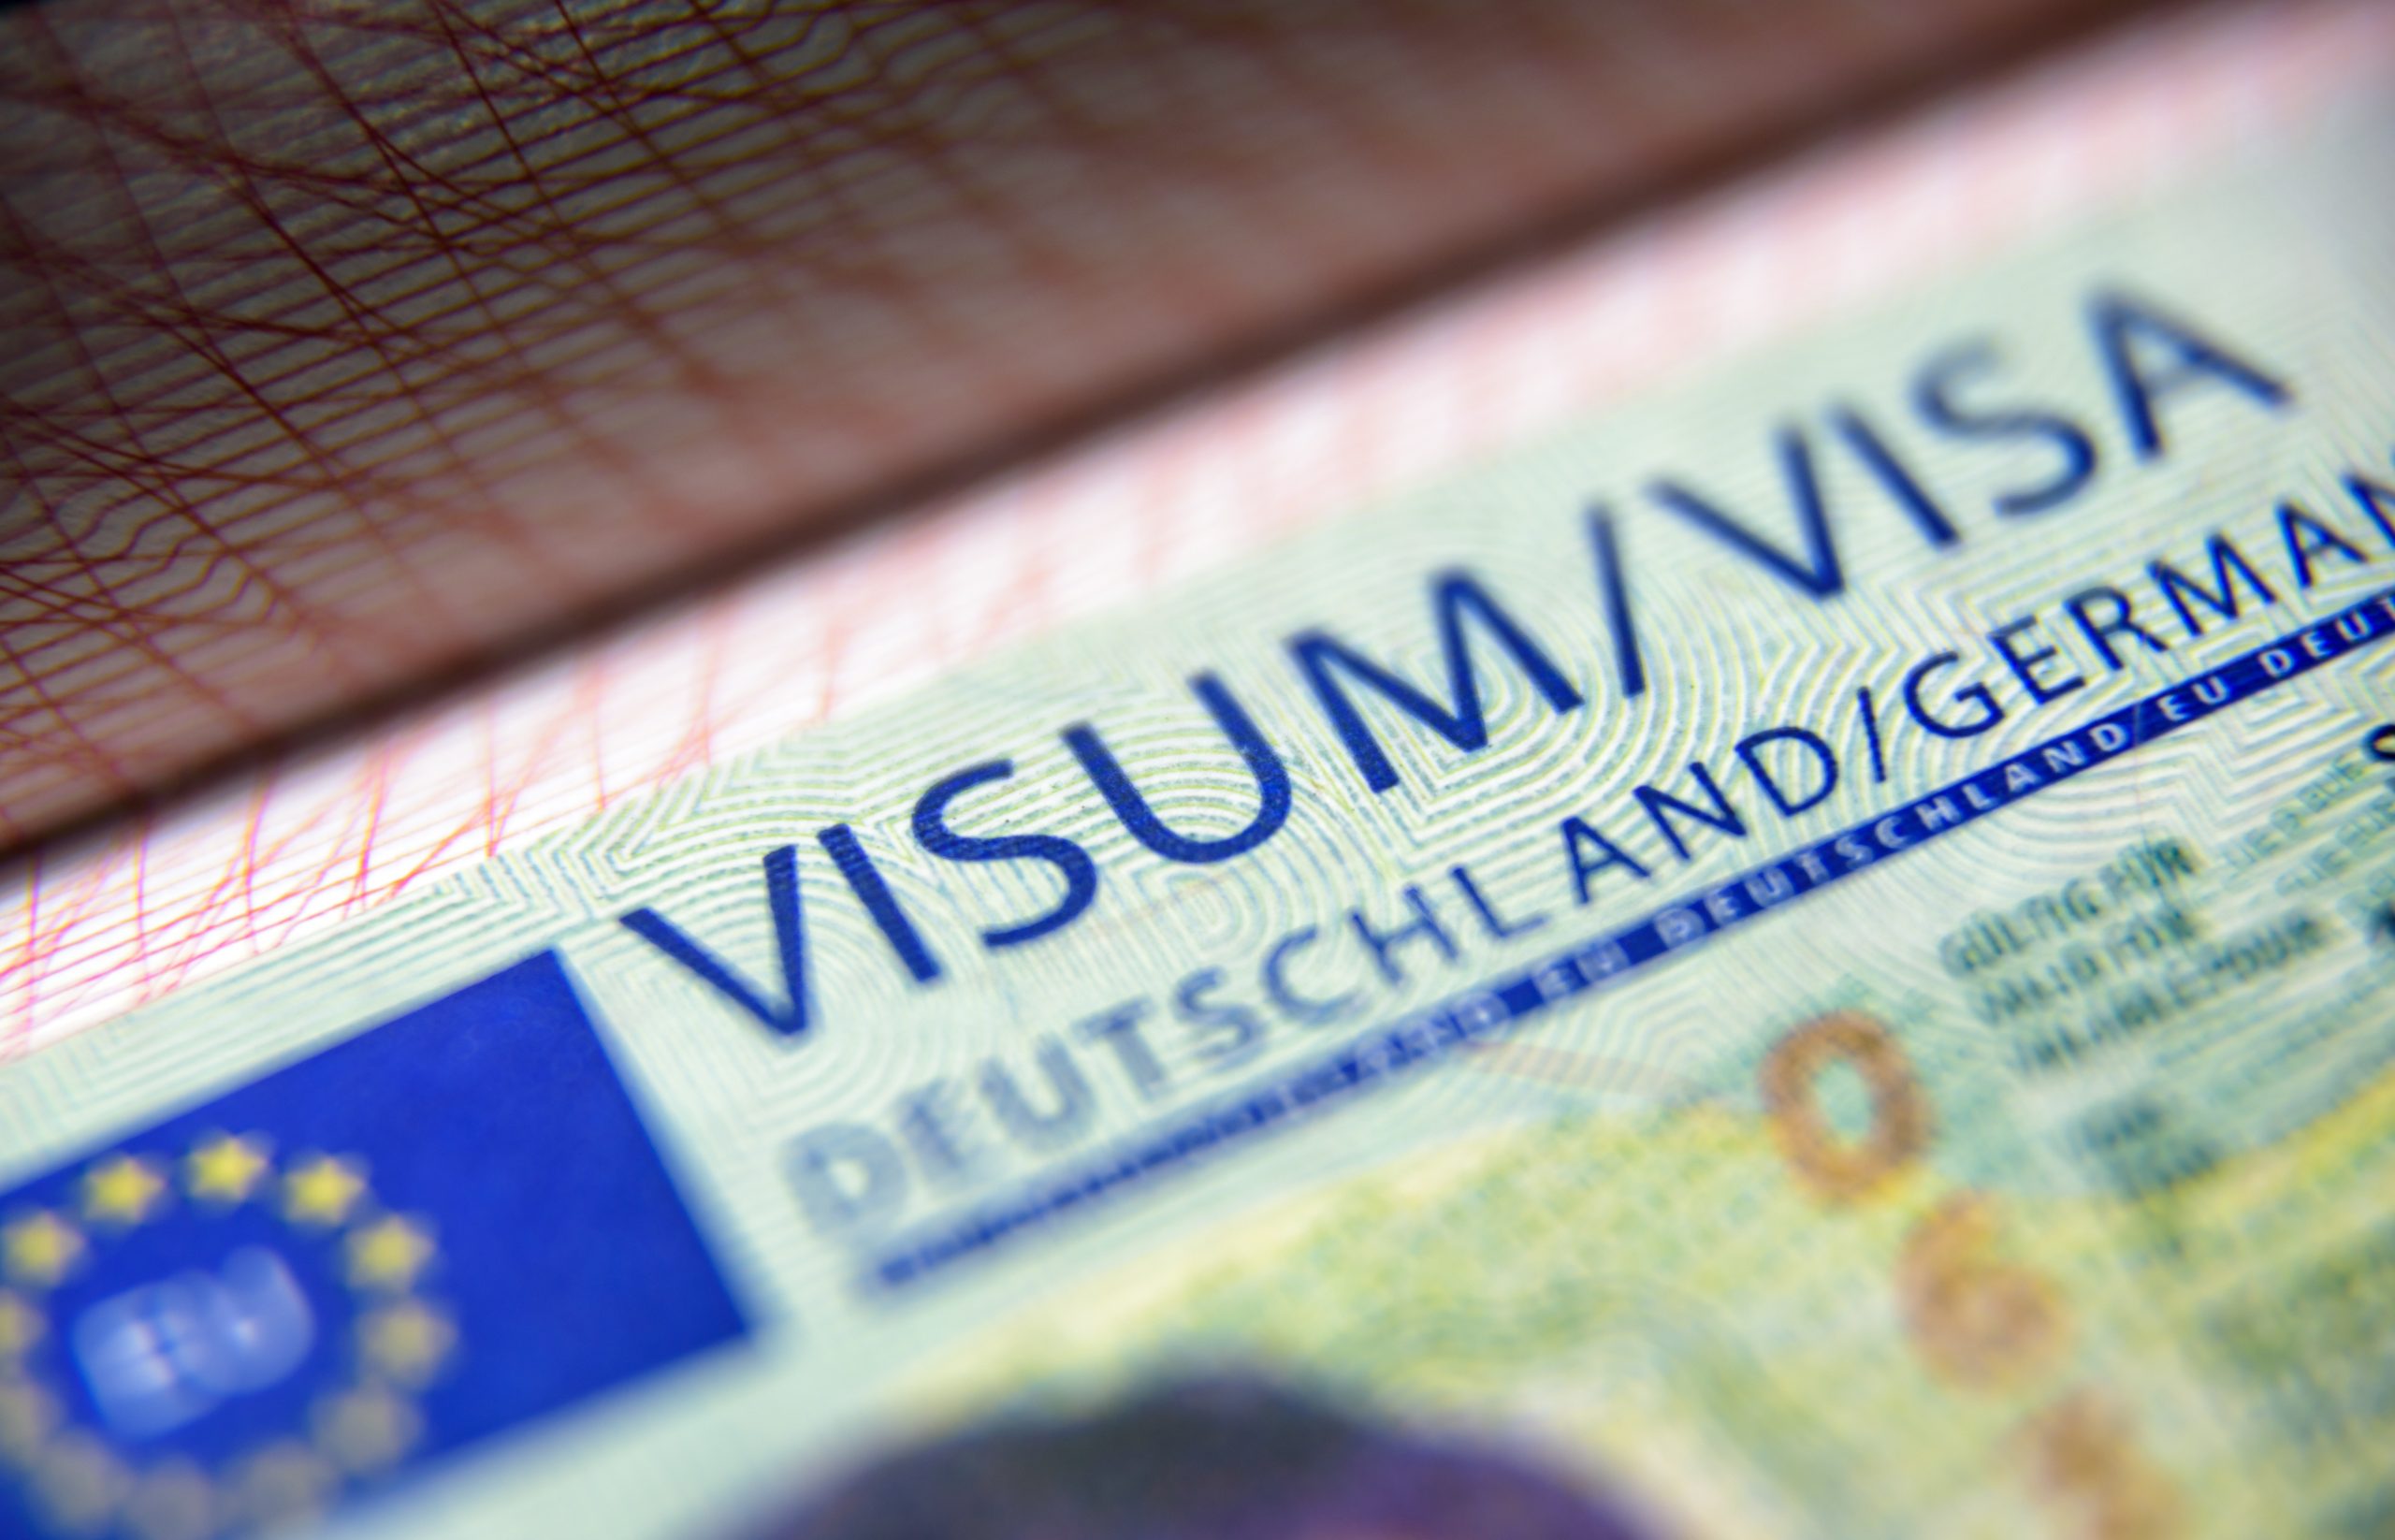 الاستعانة بـ TLScontact لتأشيرات شنجن إلى ألمانيا من المملكة